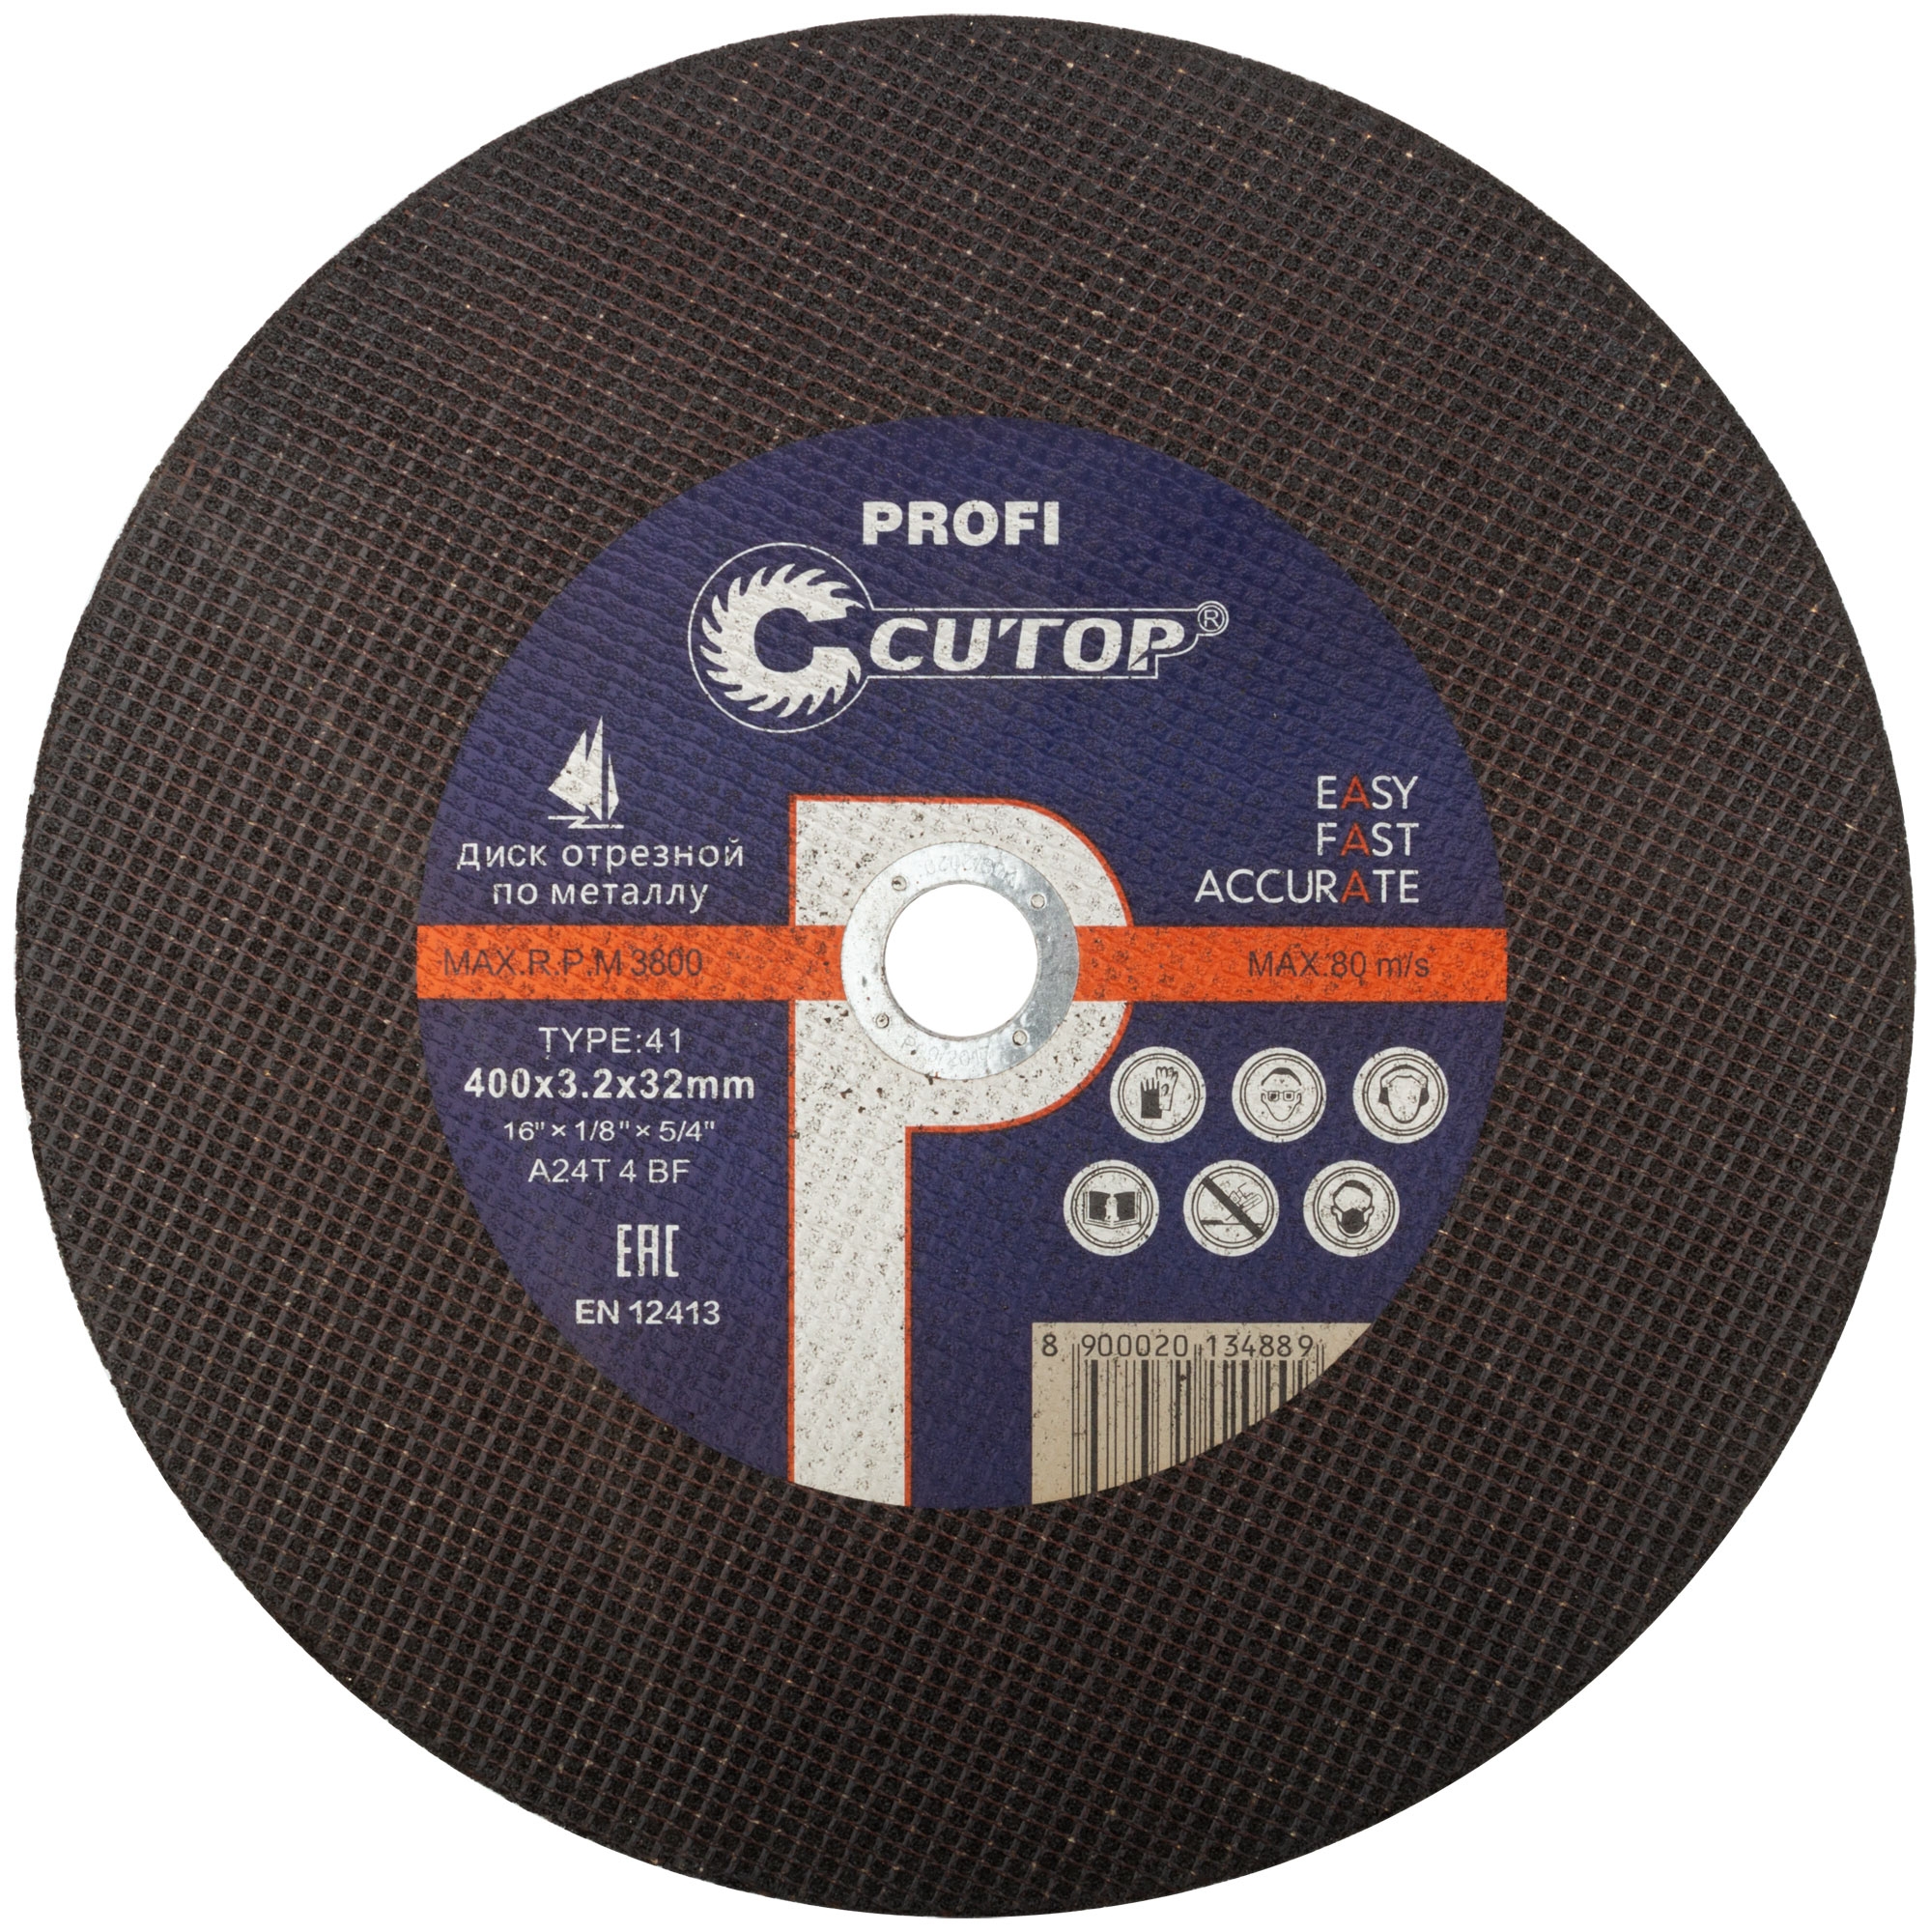 Диск отрезной абразивный по металлу Cutop Profi 400х3,2 х 32 39998т диск для станков pp 26 pp 30 new zx 30 new partner